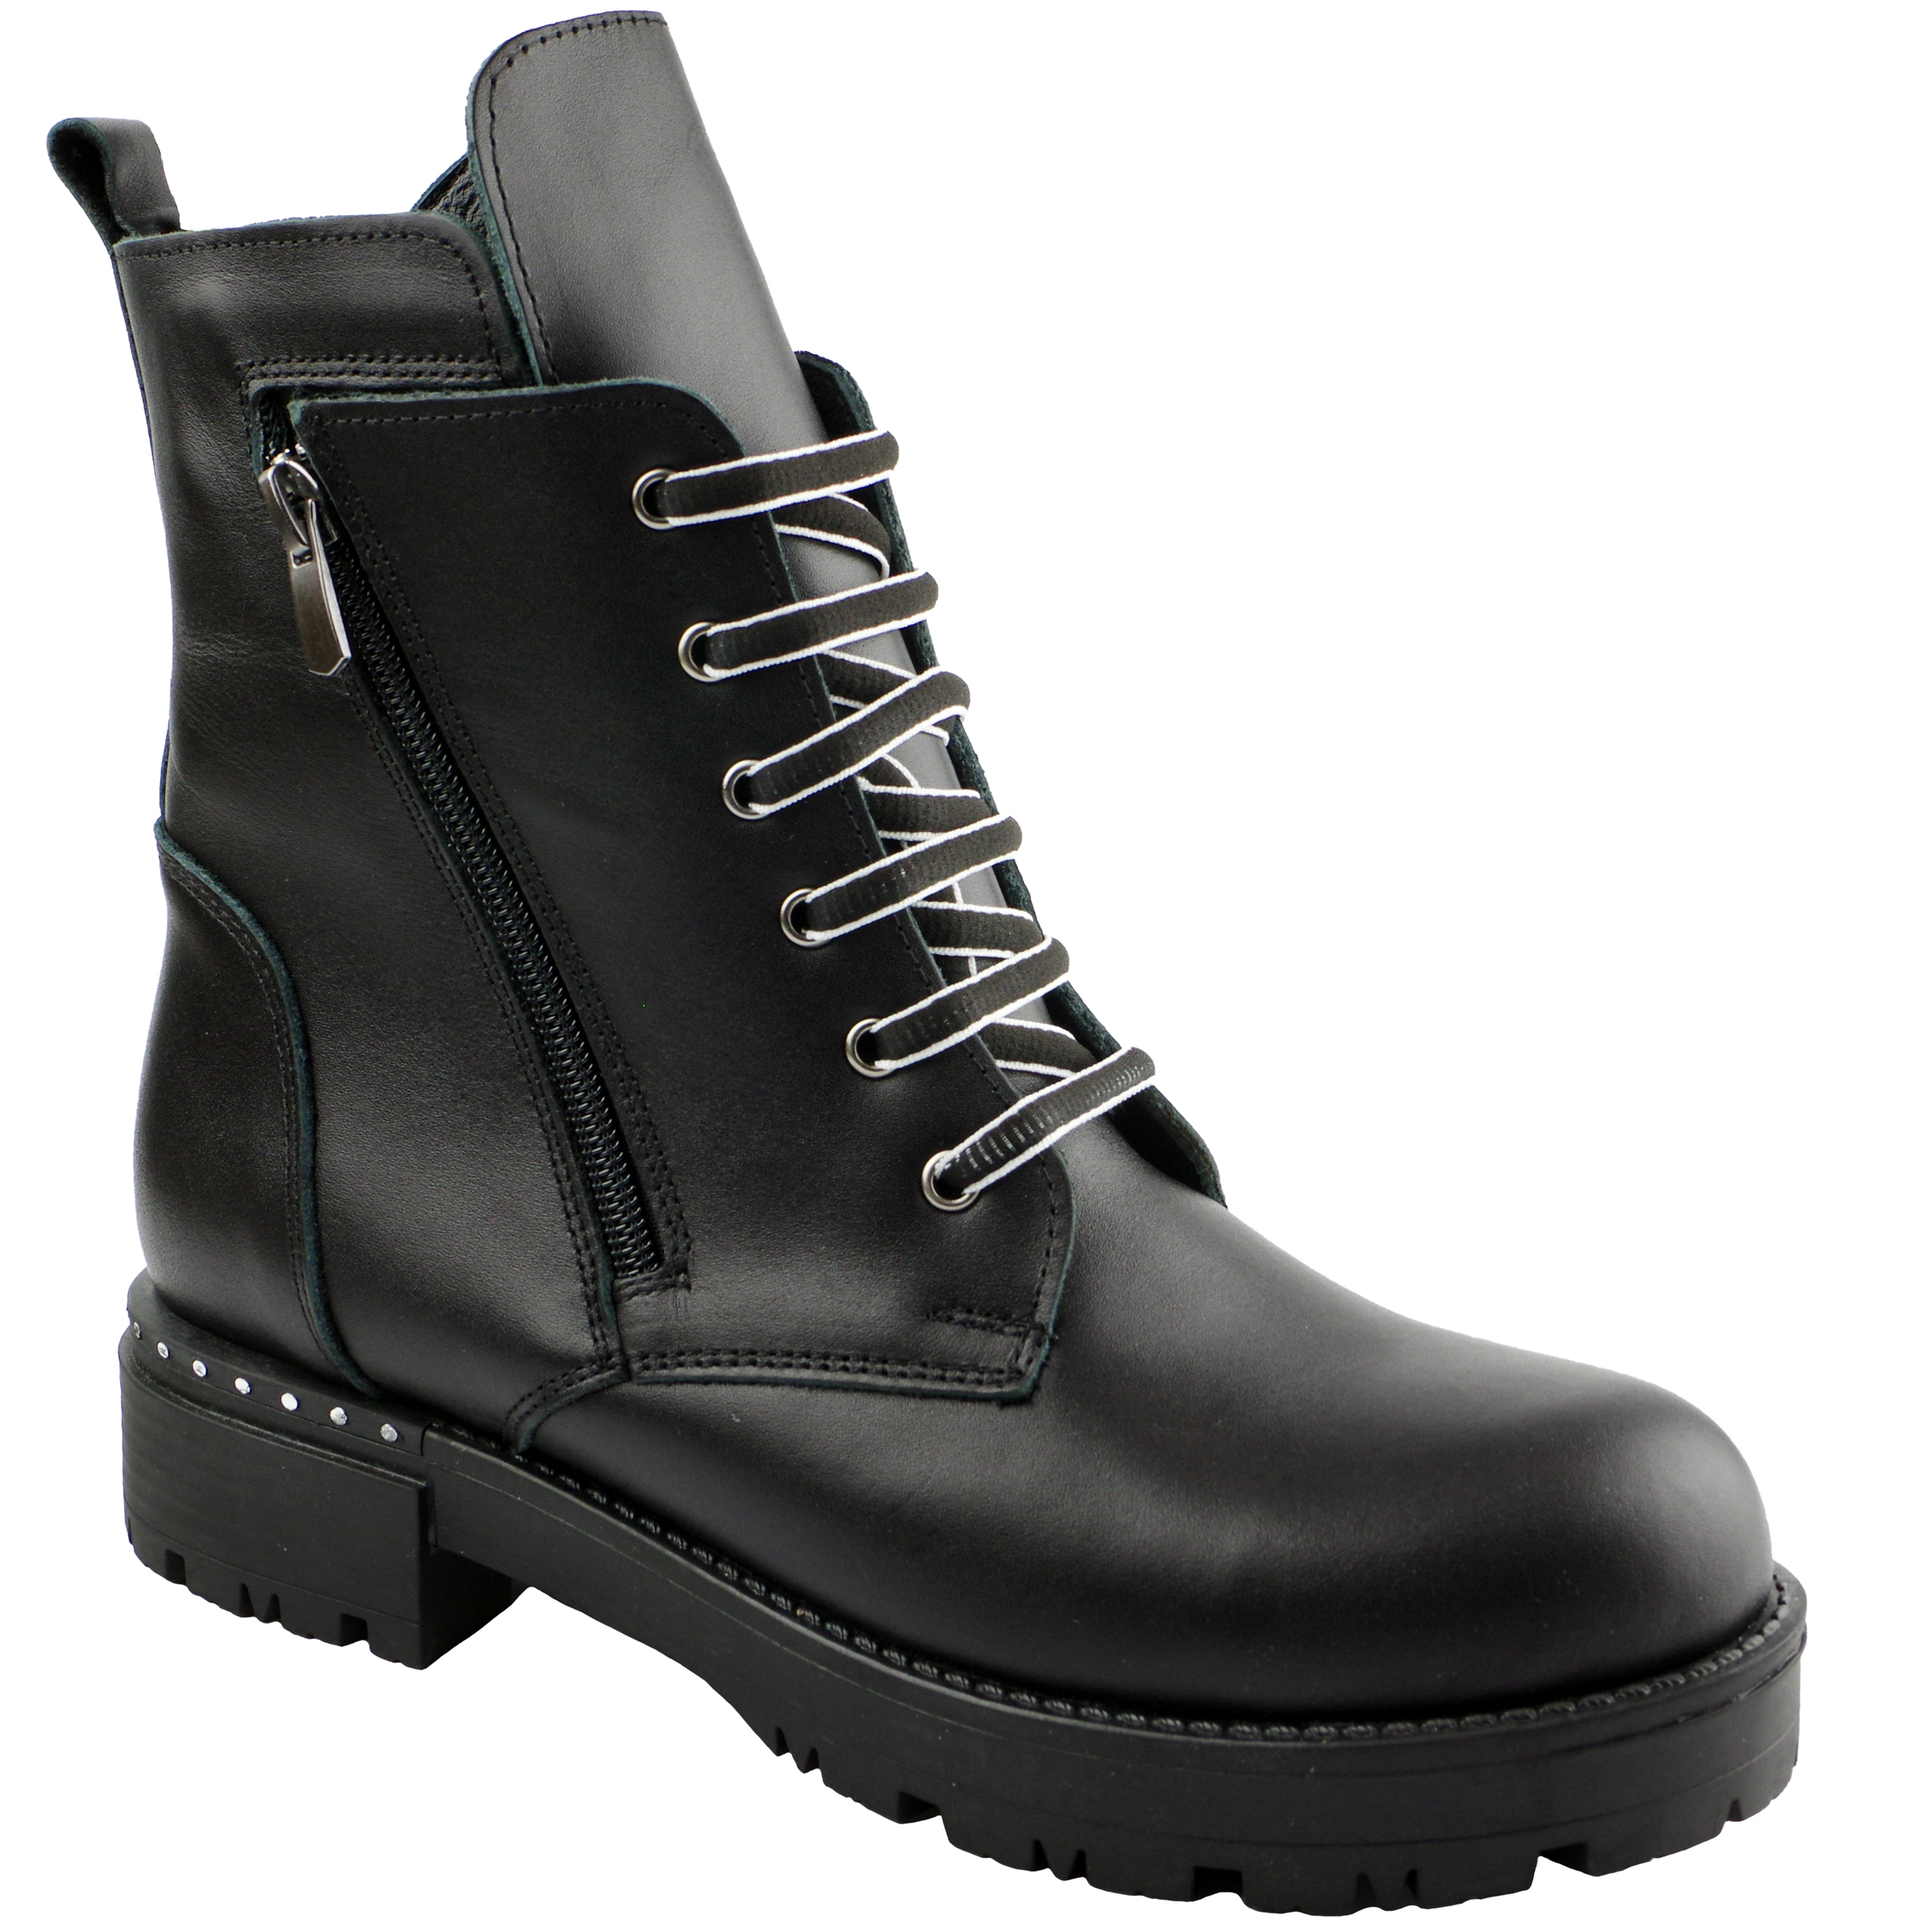 Демисезонные ботинки для подростков (2125) материал Натуральная кожа, цвет Черный  для девочки 37-39 размеры – Sole Kids